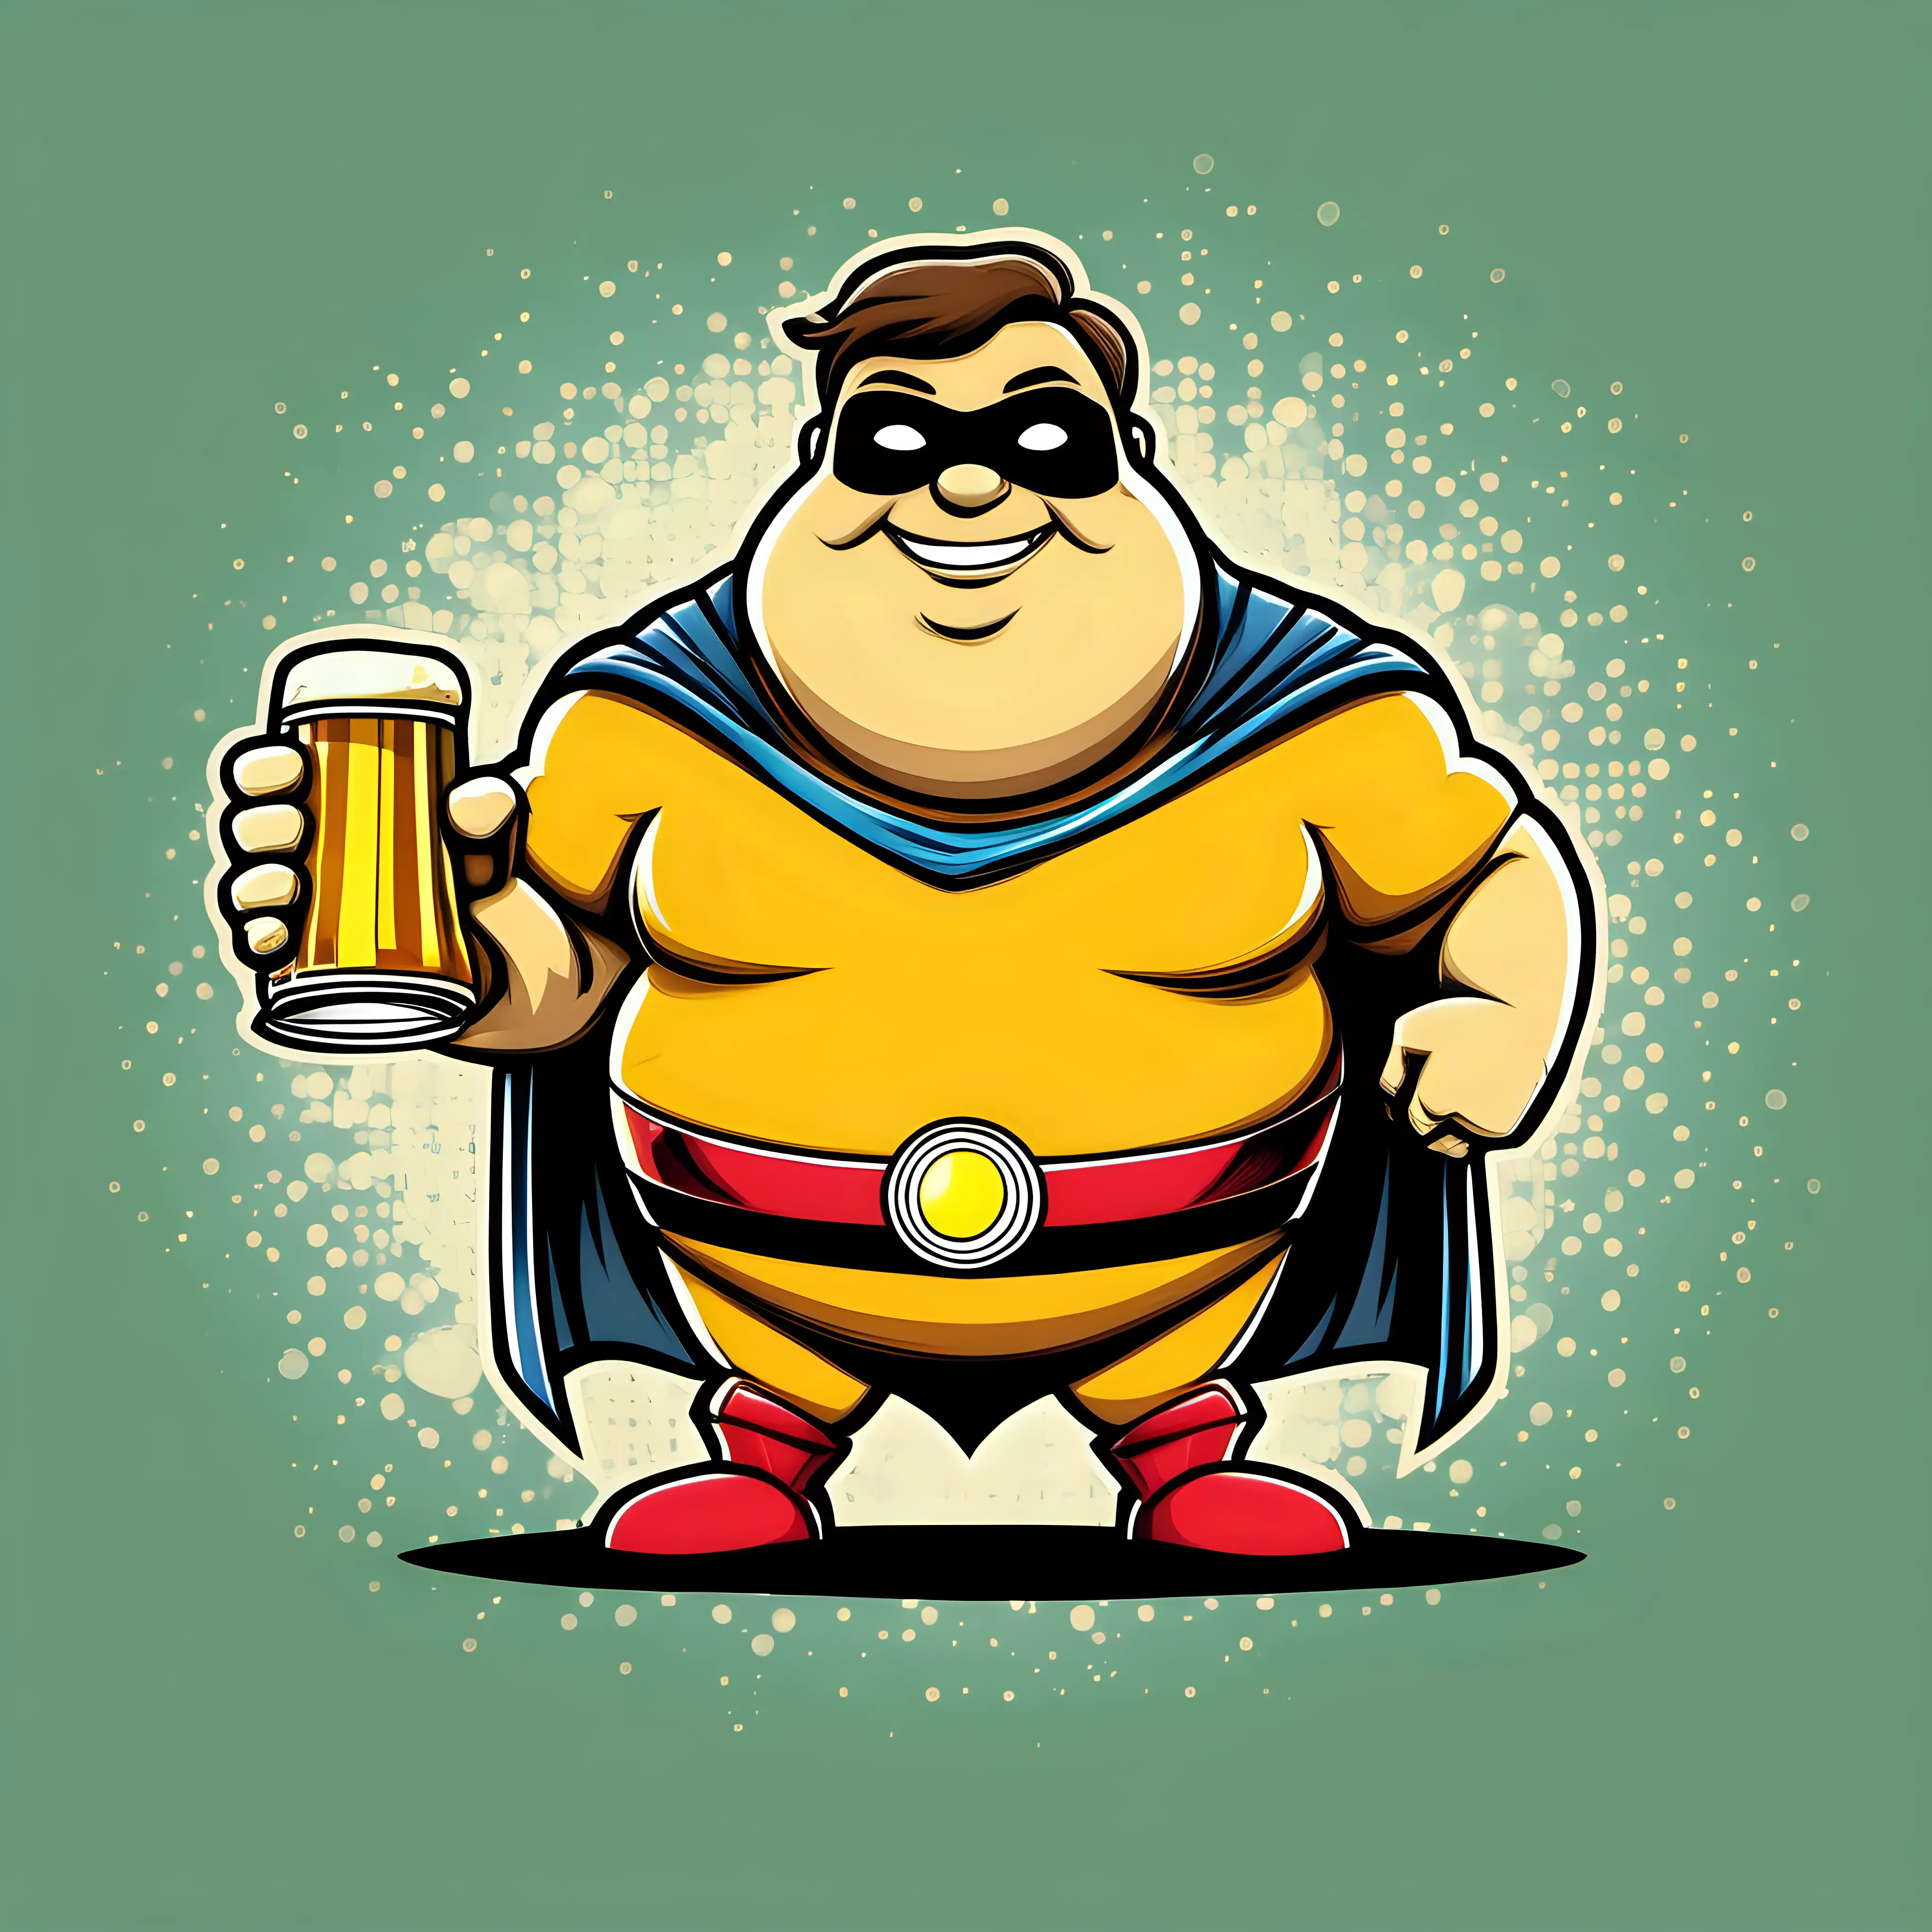 Create Beerman a friendly beer drinking chubby superhero (cartoonstyle)